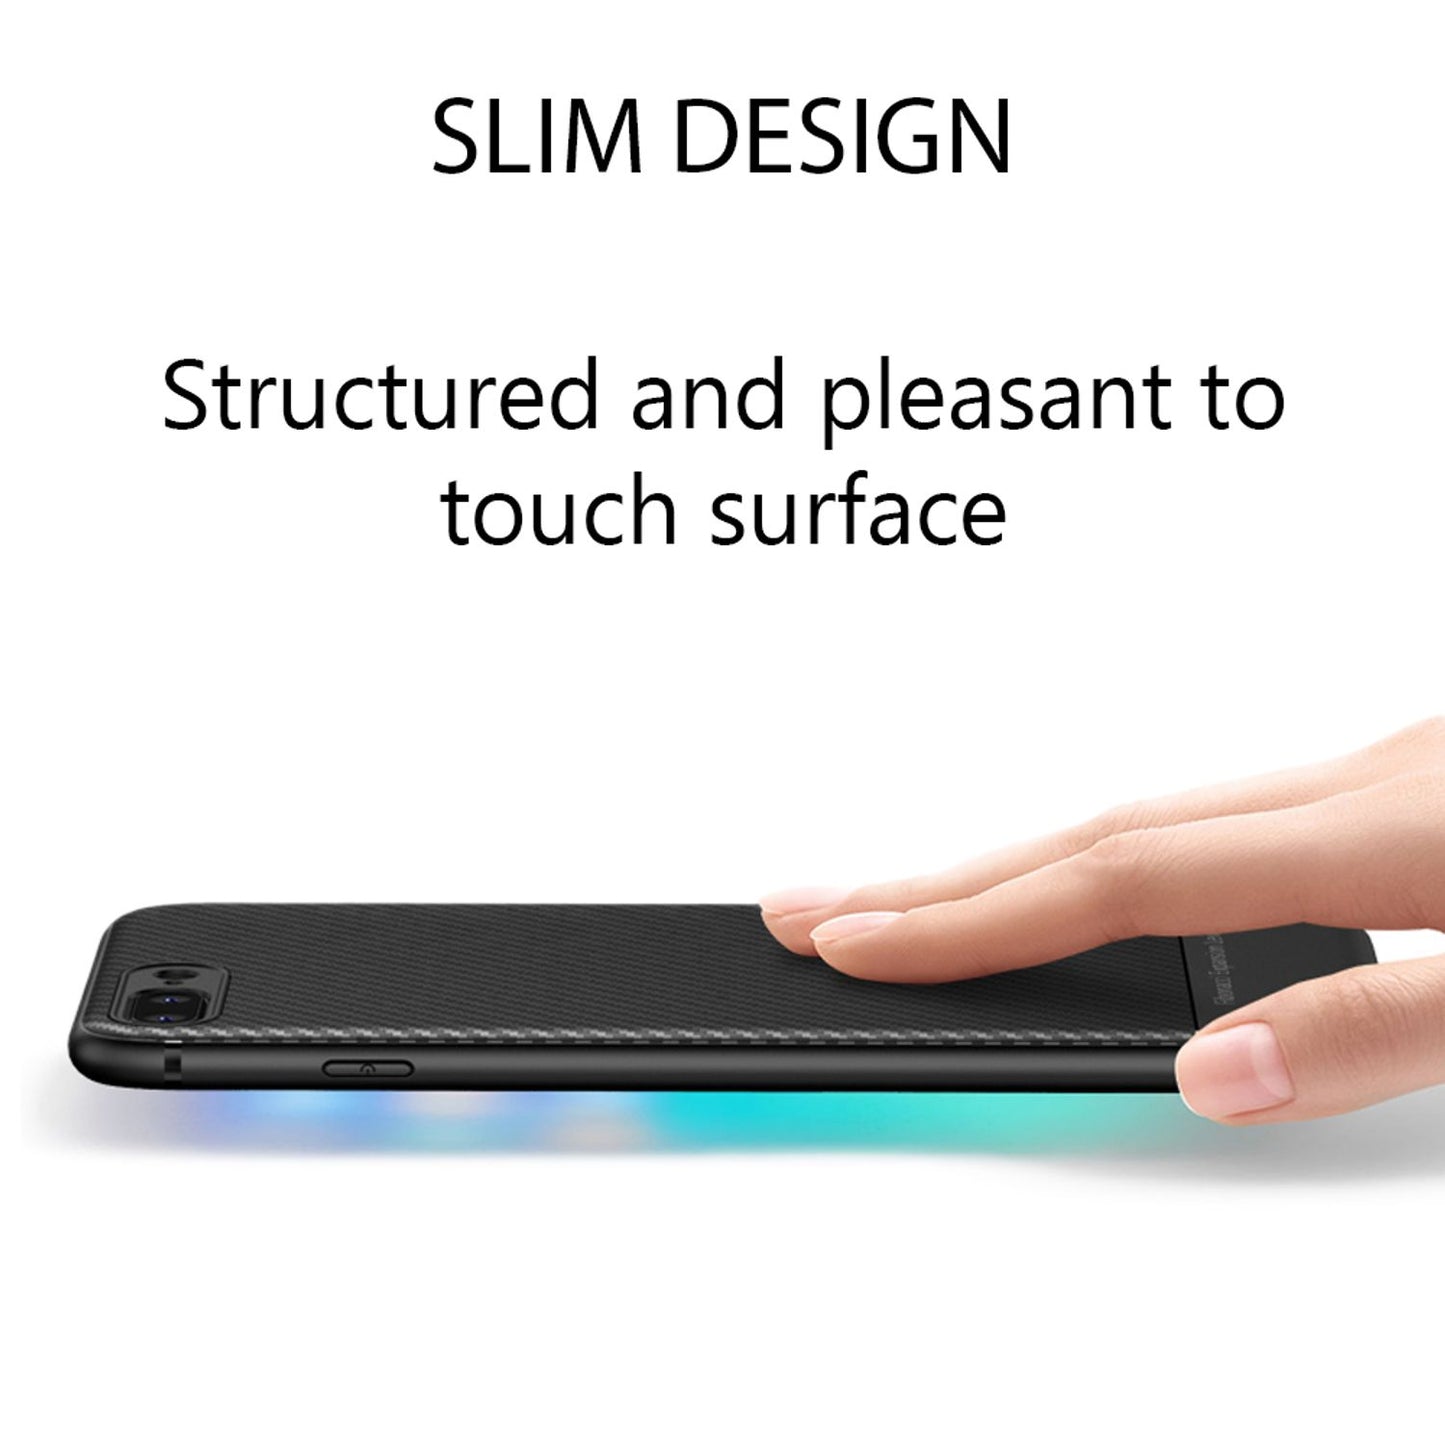 NALIA Hülle für iPhone 8 Plus / 7 Plus, Slim Handyhülle Case Cover Carbon Look